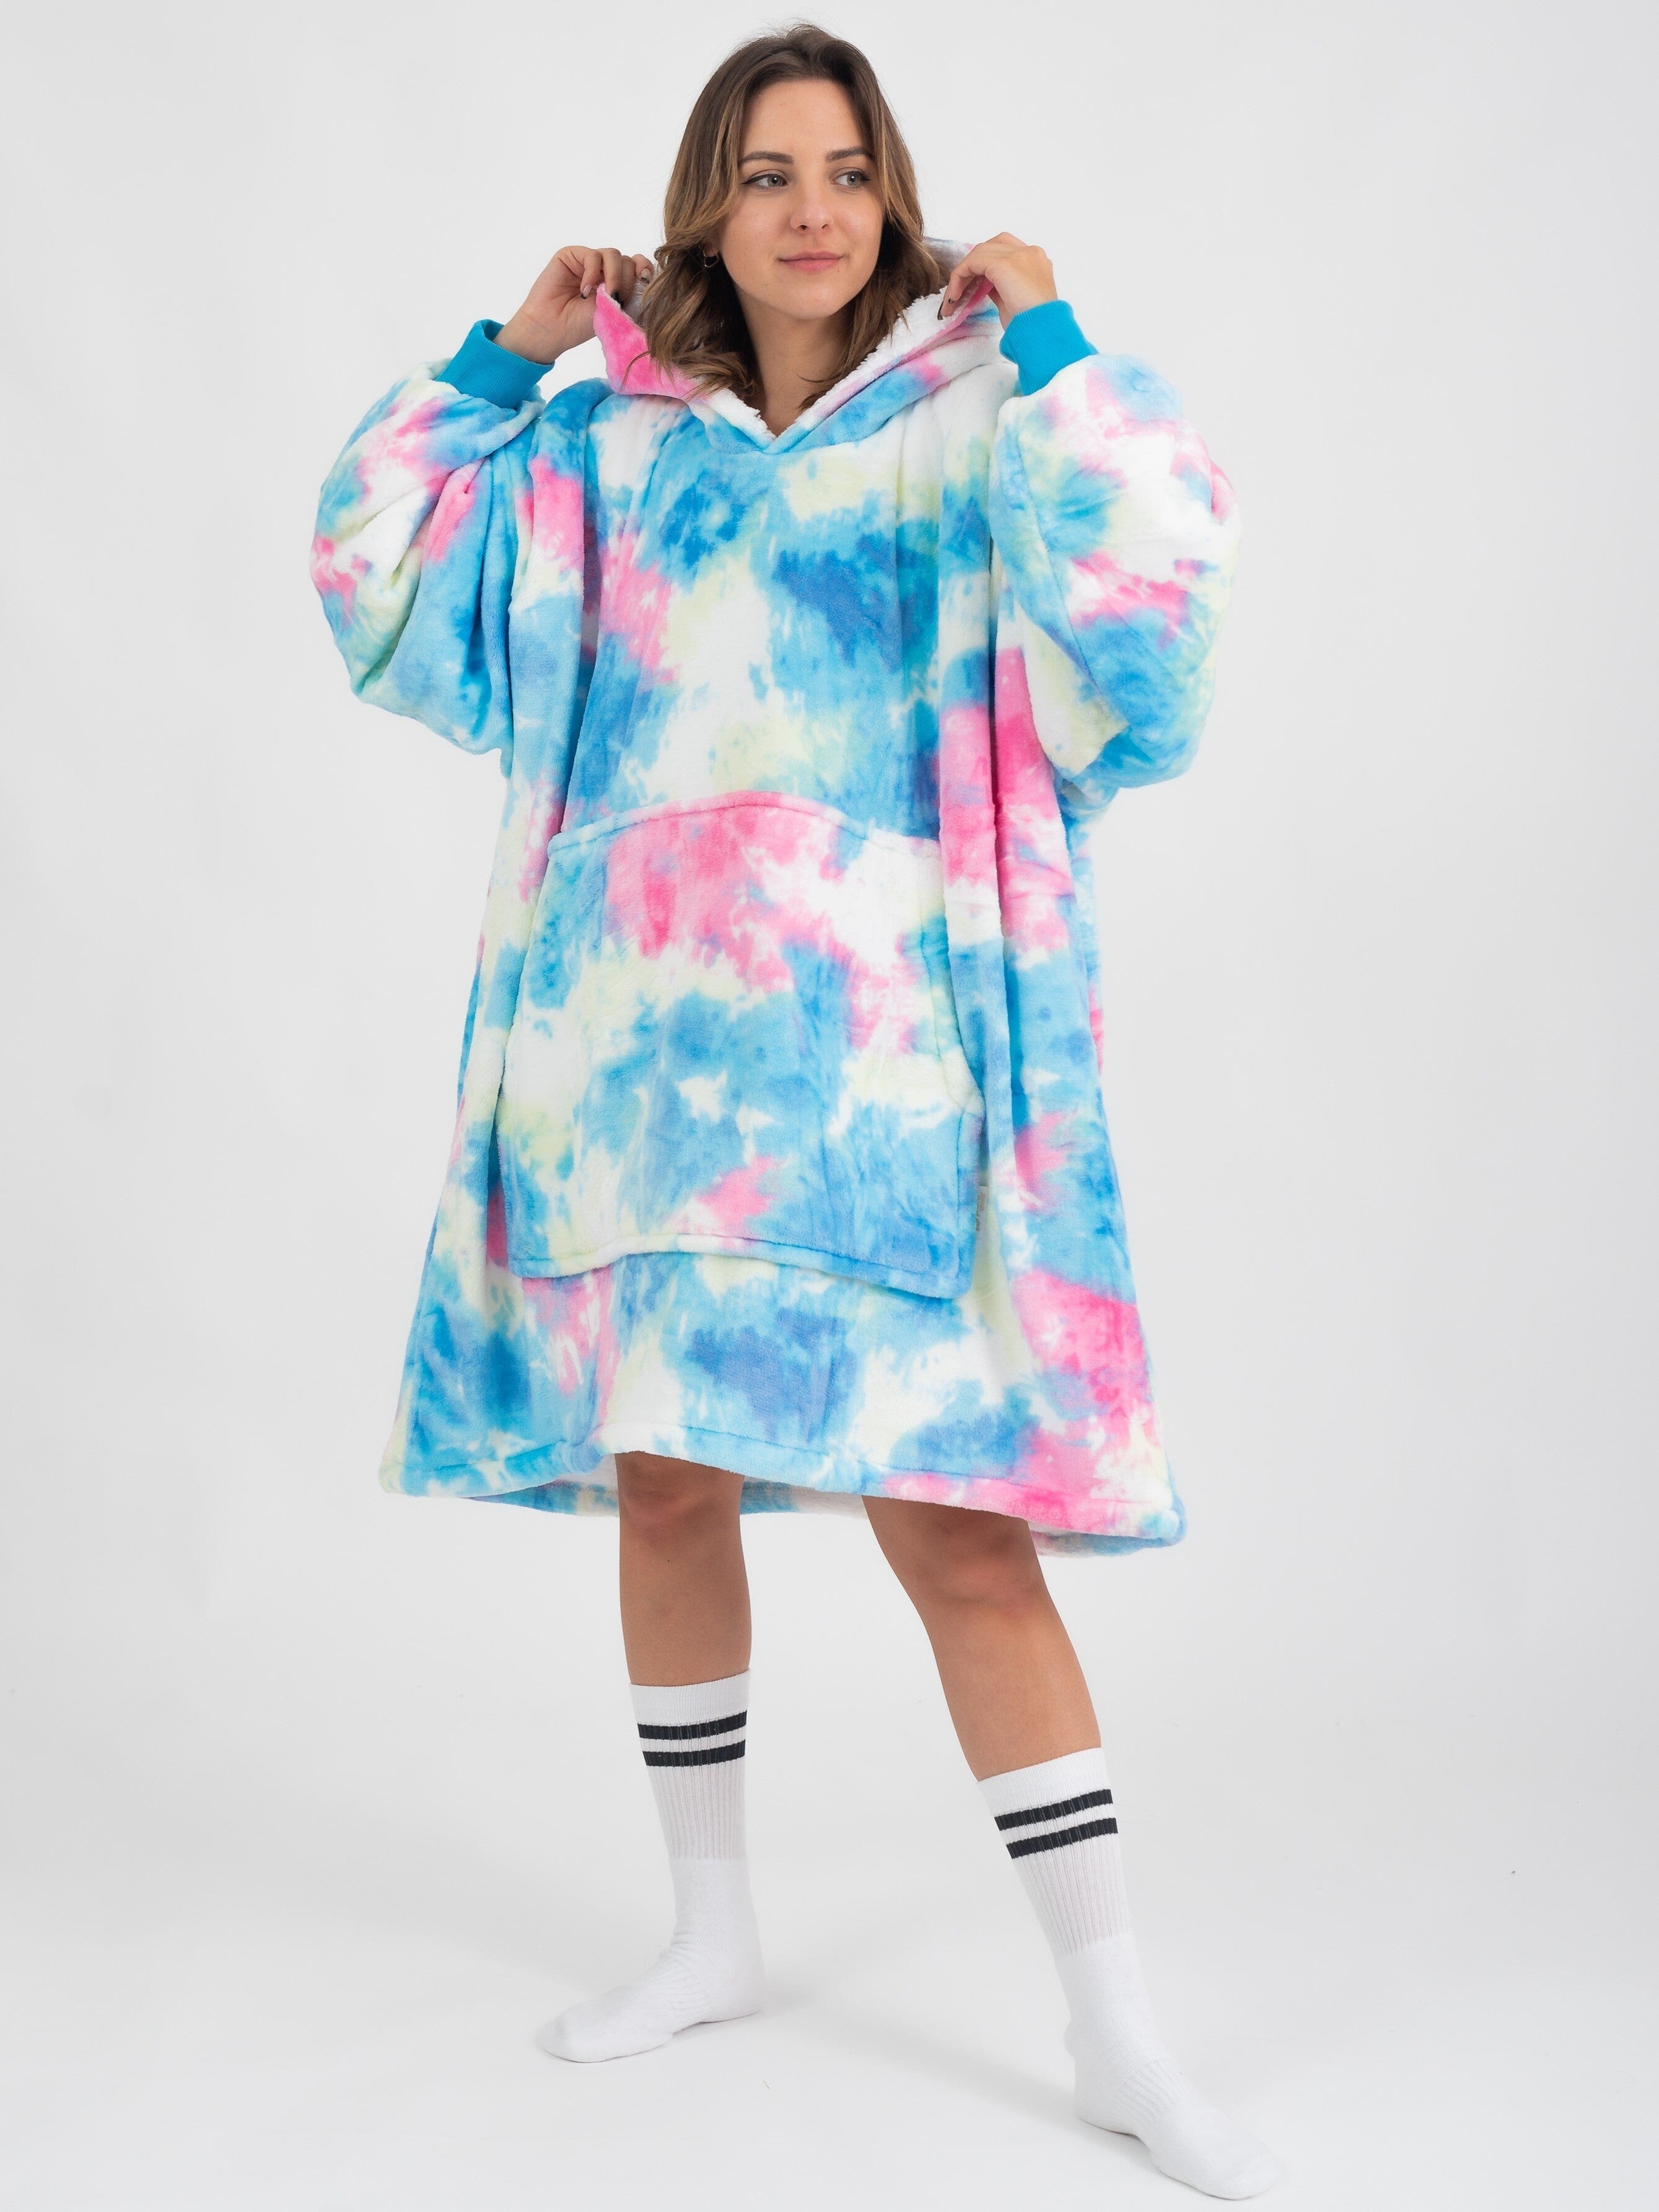 Pijama Cobertor Kawaii Colorful GatoGeek 